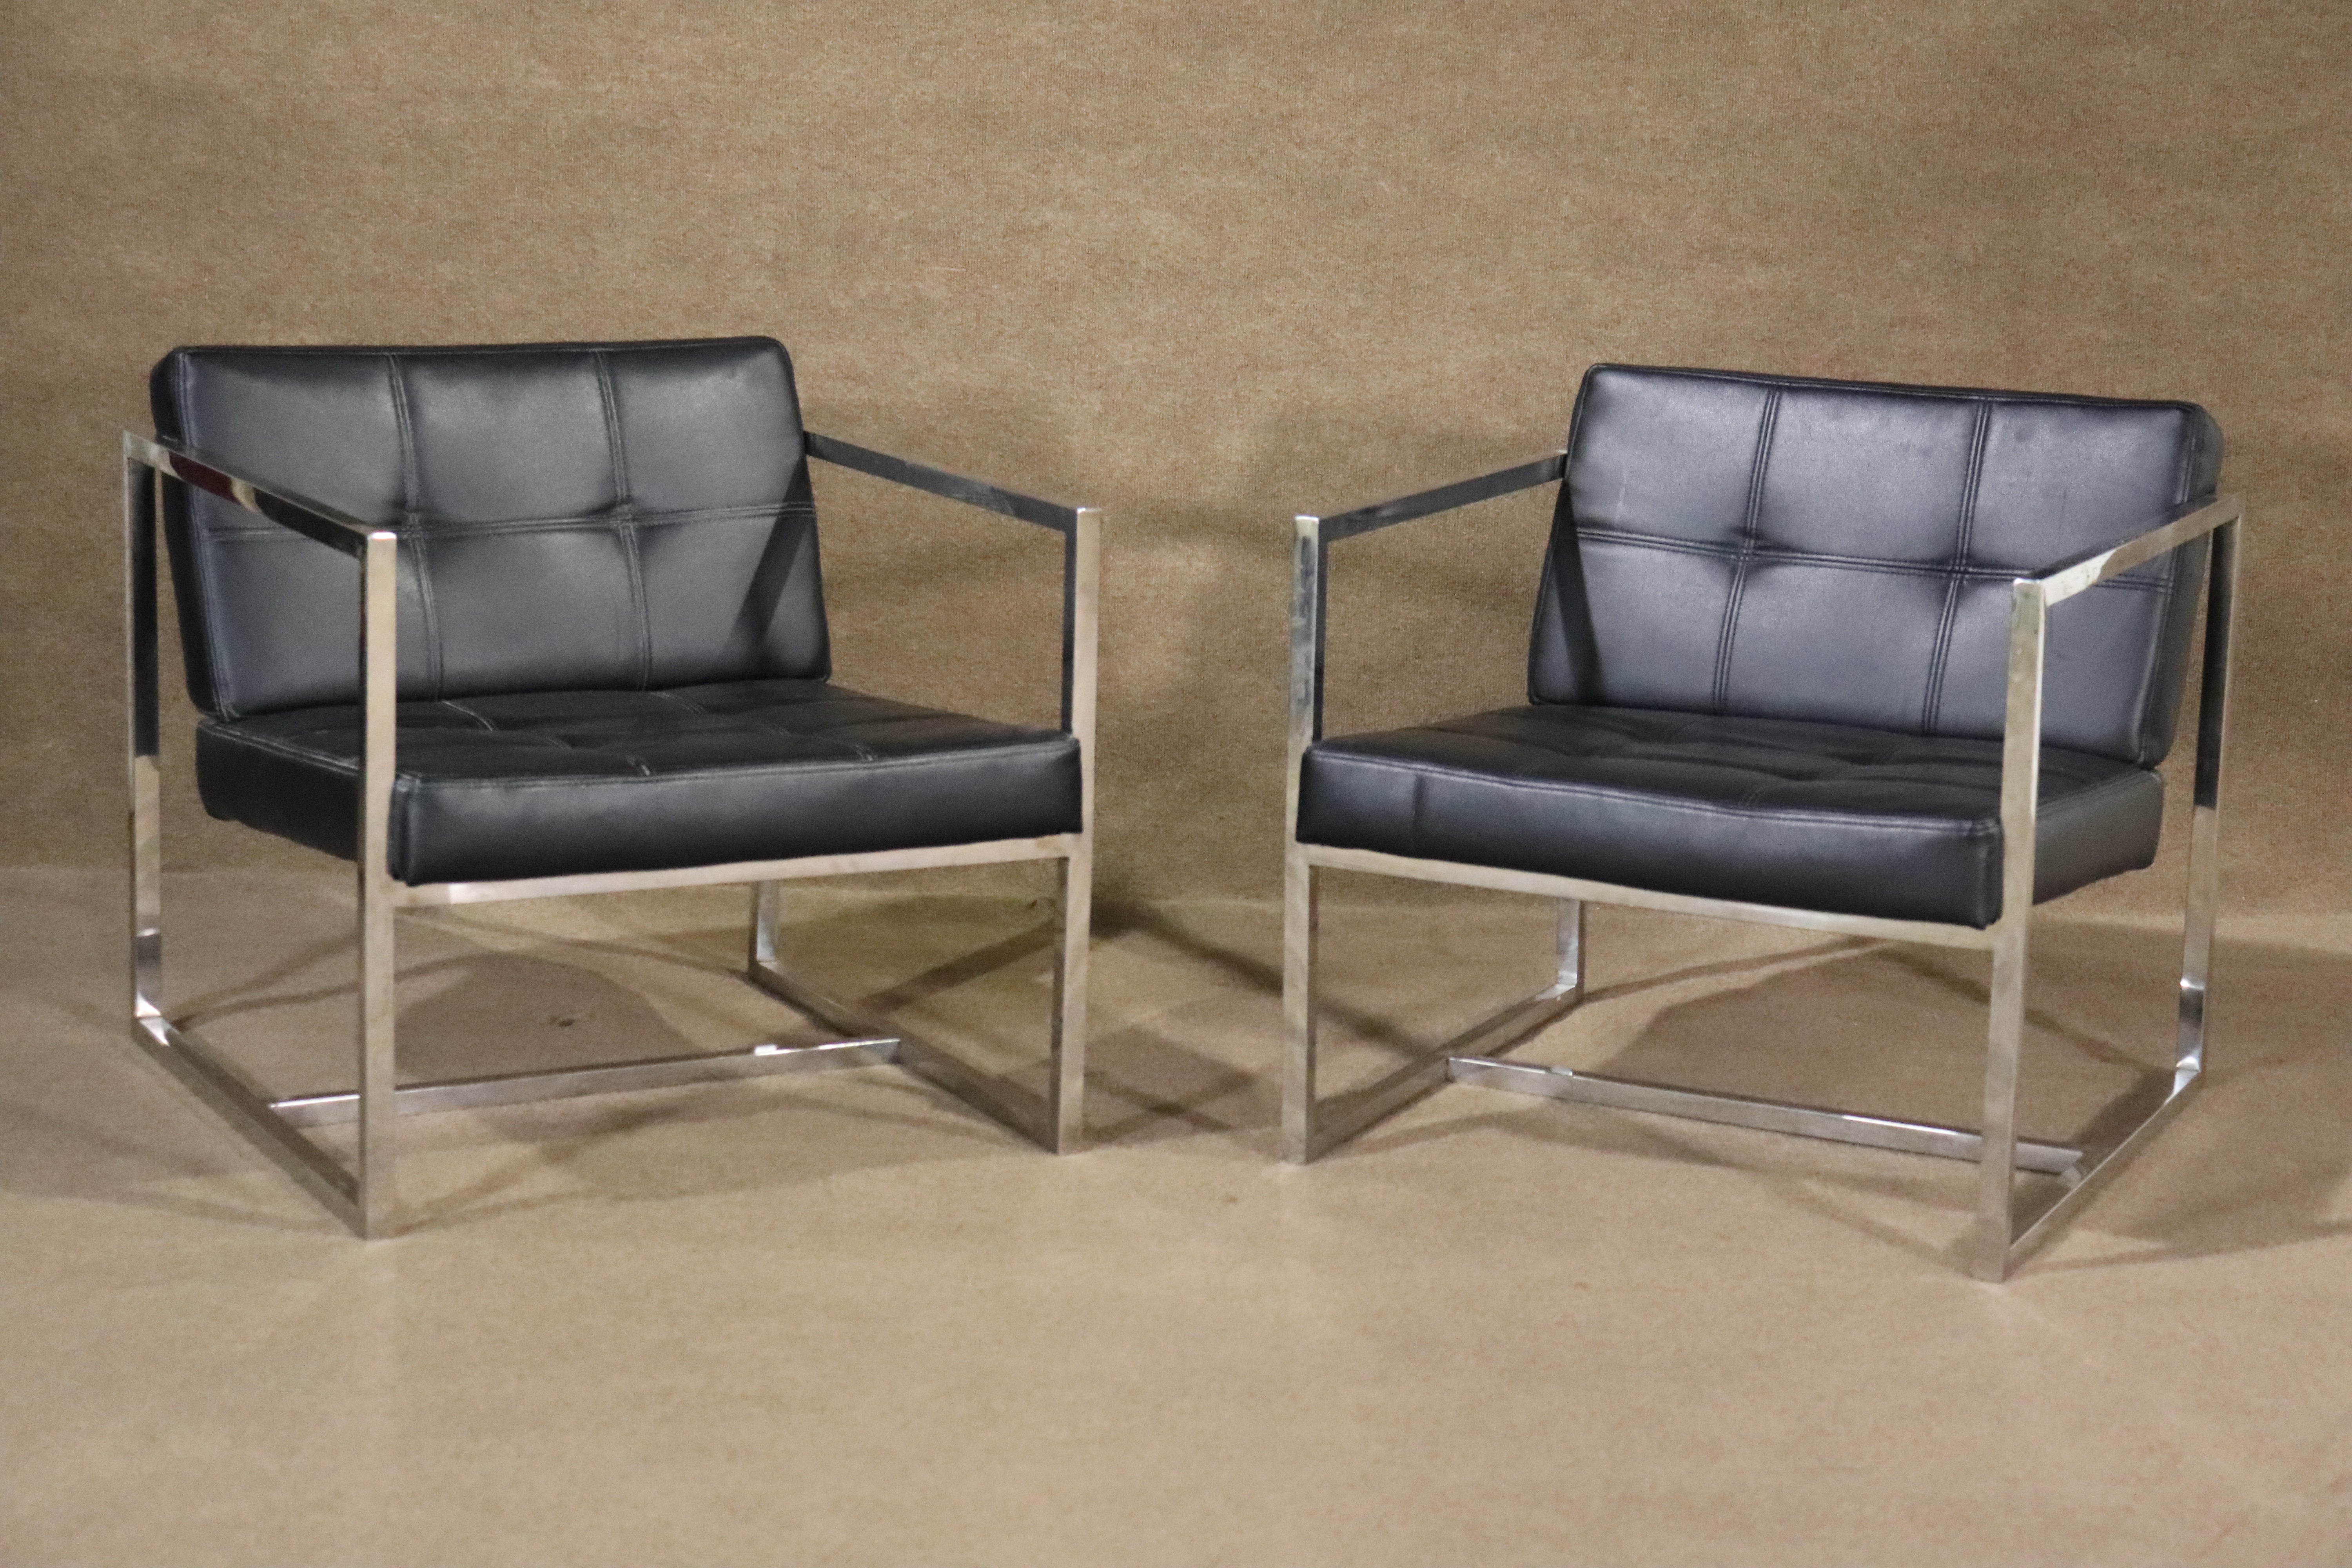 Apportez chez vous ce magnifique mélange de forme et de fonction avec deux élégantes chaises longues en chrome poli et en cuir. Avec une base robuste en chrome poli et un cuir tufté, ces chaises en cuir conviennent parfaitement à la maison ou au